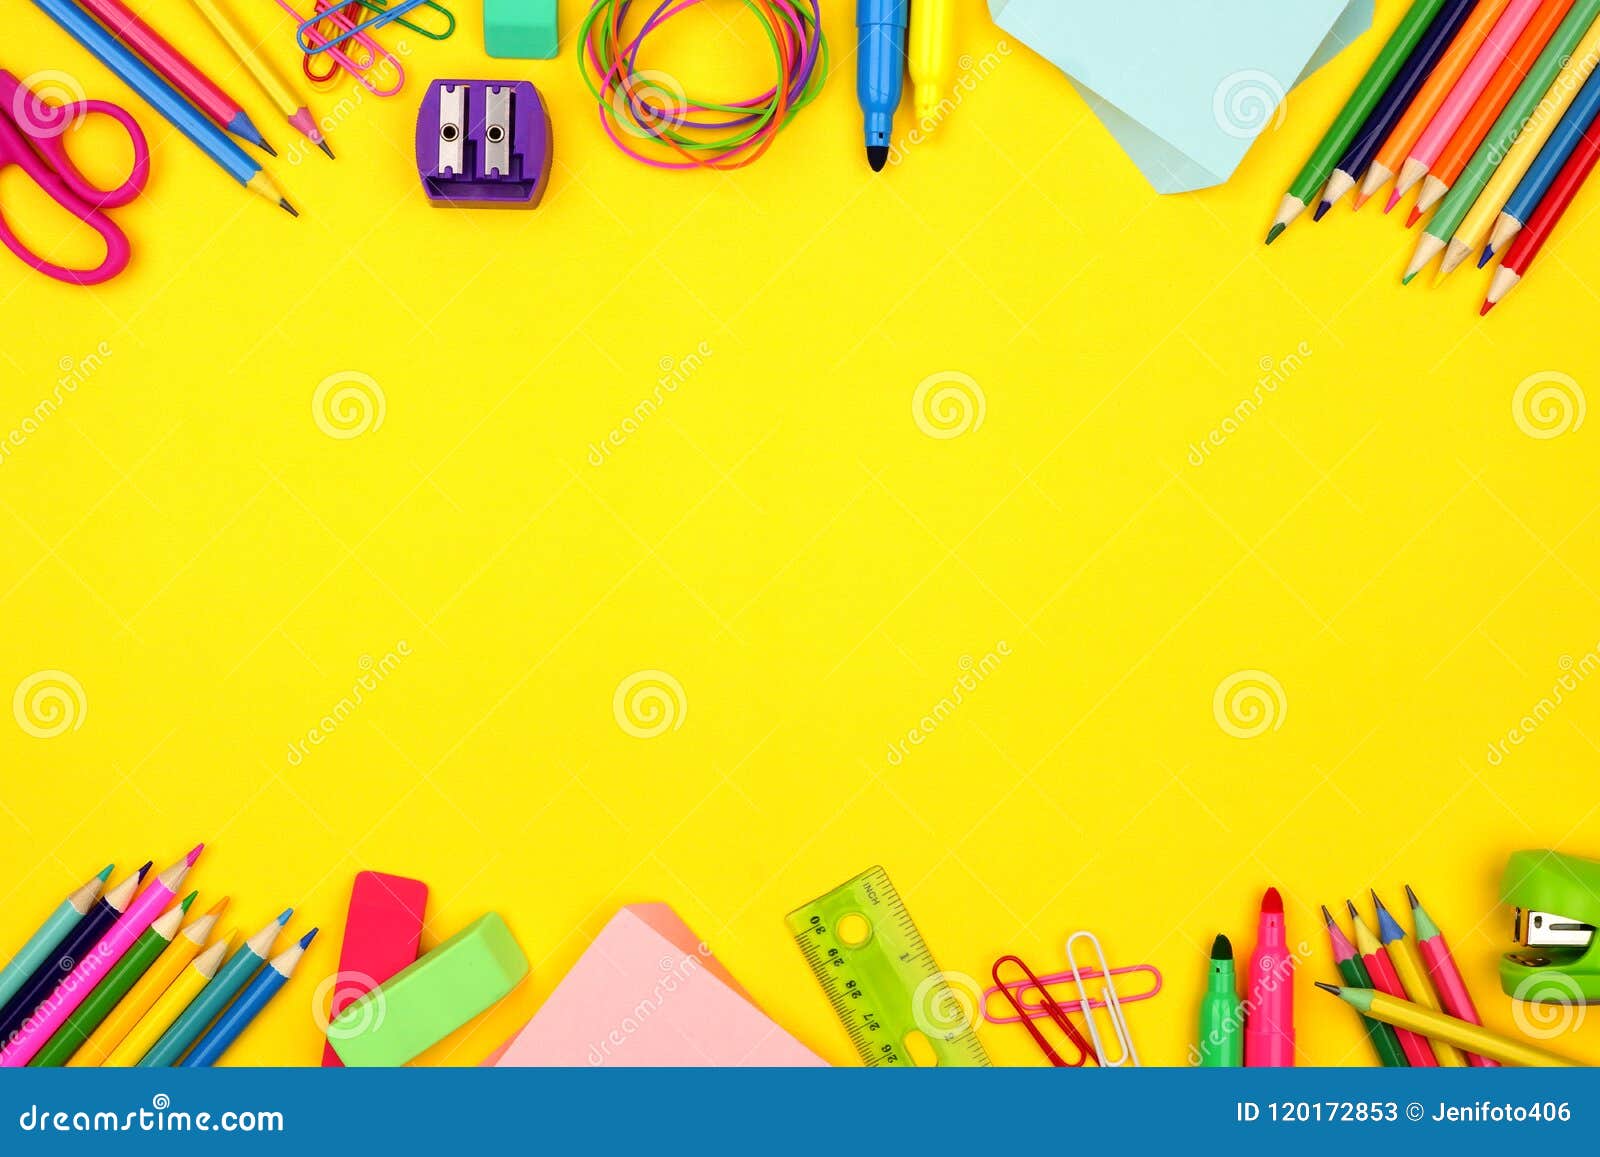 Monet Stadscentrum In beweging De School Levert Dubbele Grens Over Een Gele Achtergrond Stock Afbeelding -  Image of potlood, gekleurd: 120172853